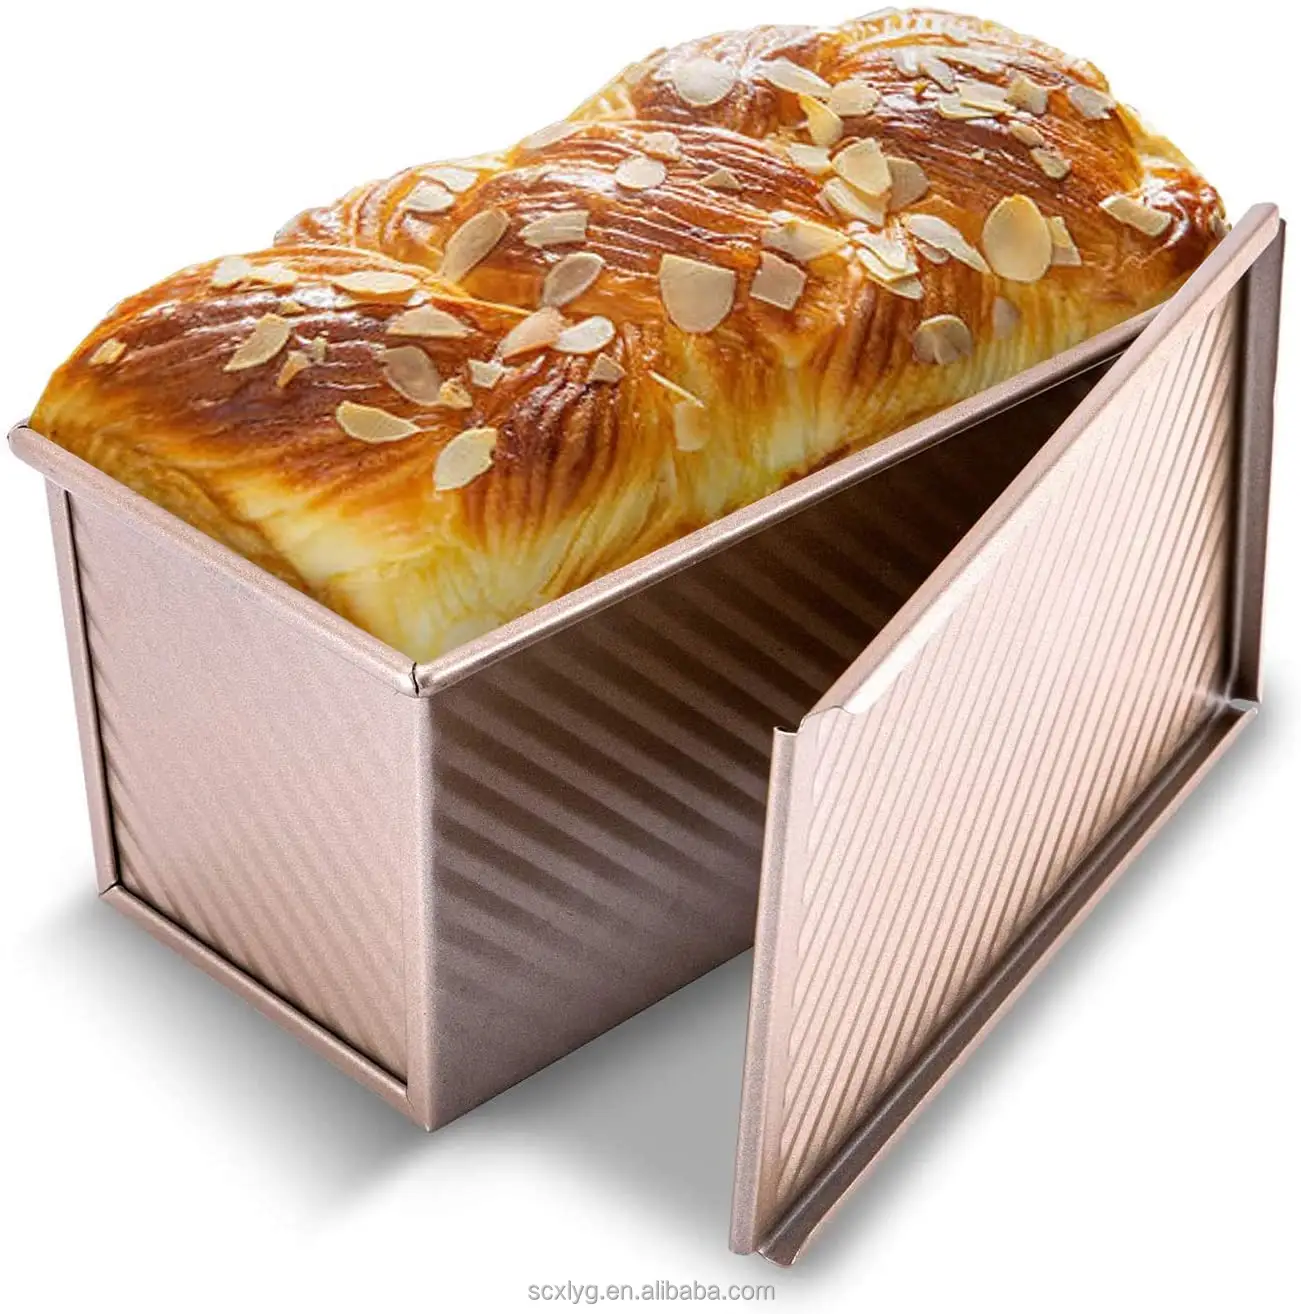 Frigideira de pão enrolado, venda quente, panelas onduladas para assar pão, 450g, caixa de leite antiaderente